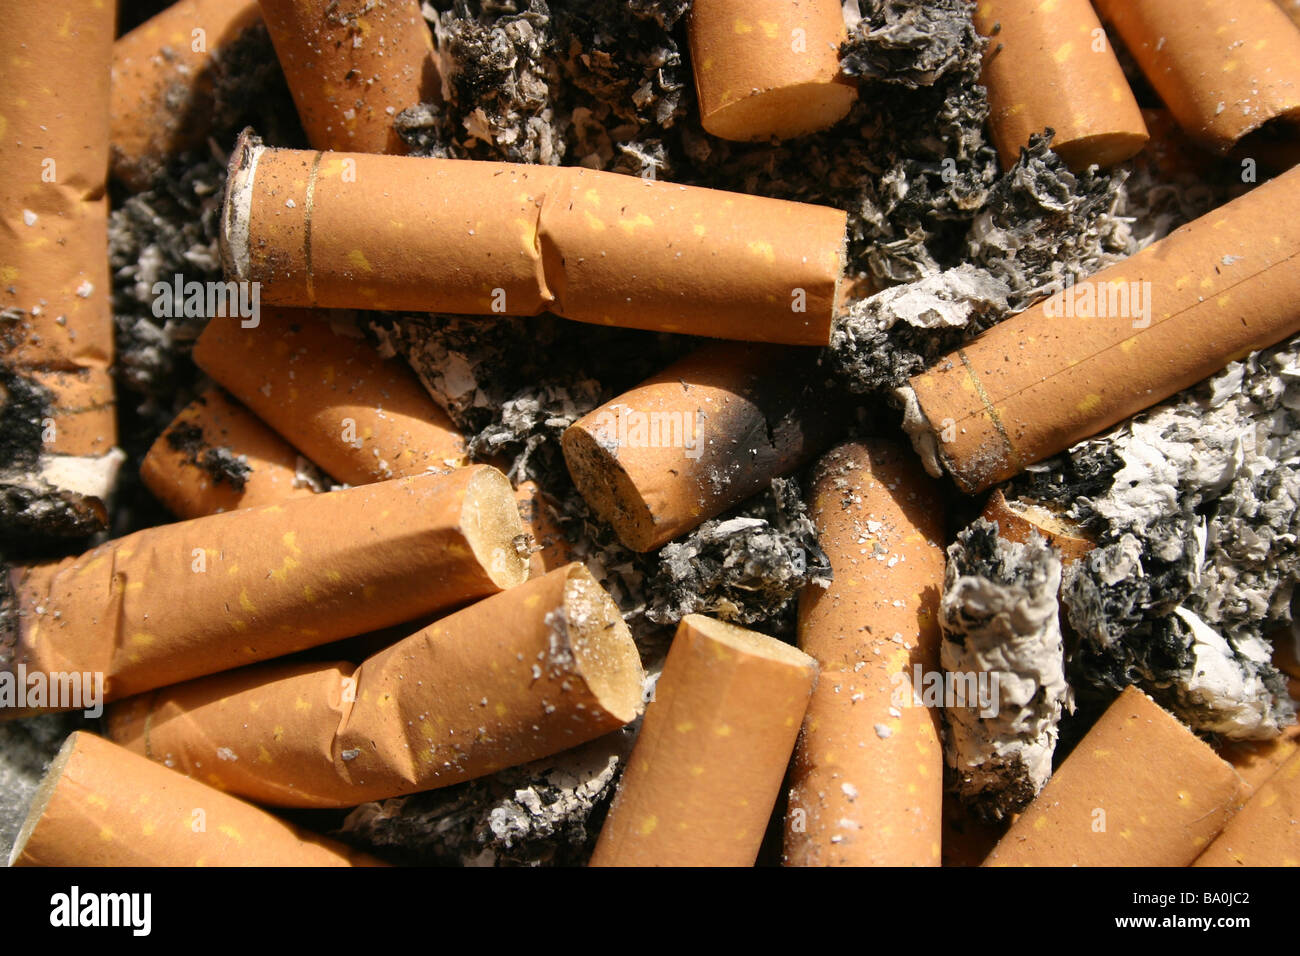 abstraktes Bild von Zigarettenkippen Stockfoto